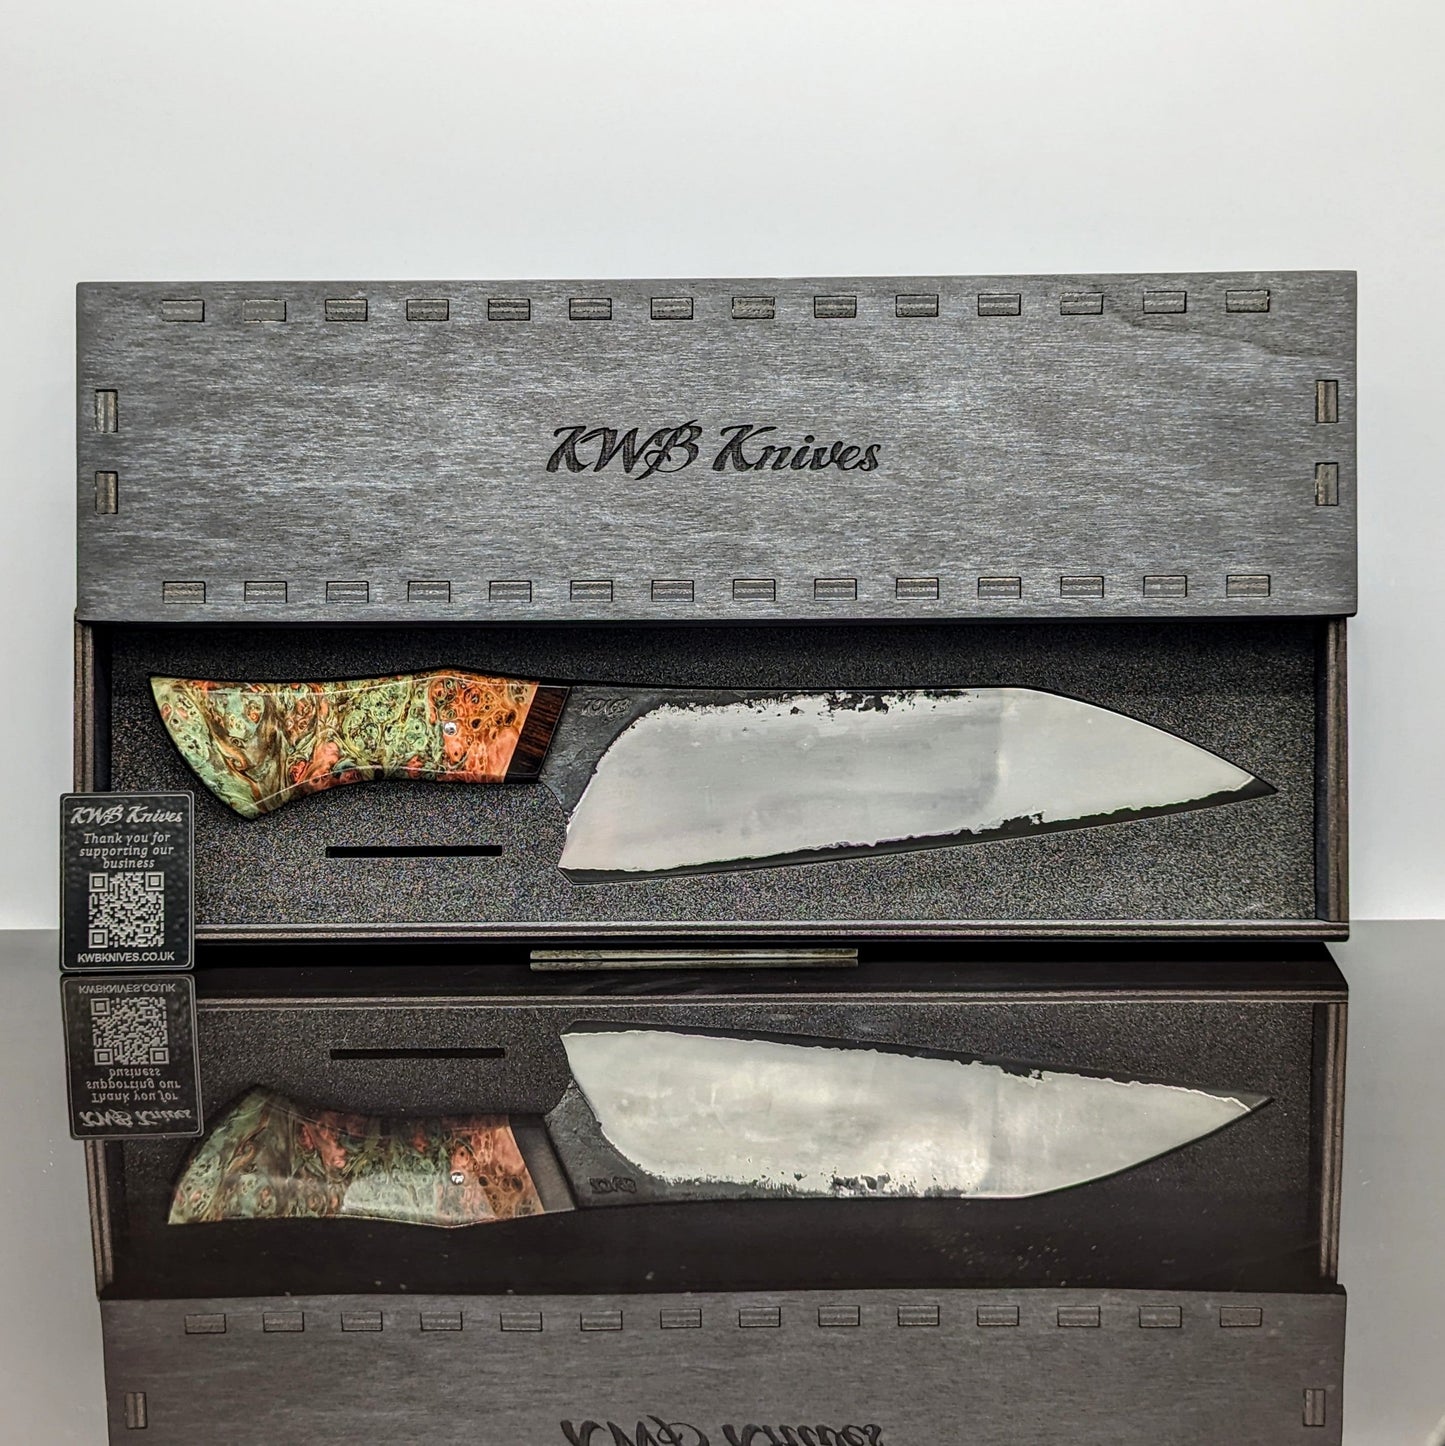 Handmade Stainless San-Mai Bunka Kitchen Knife